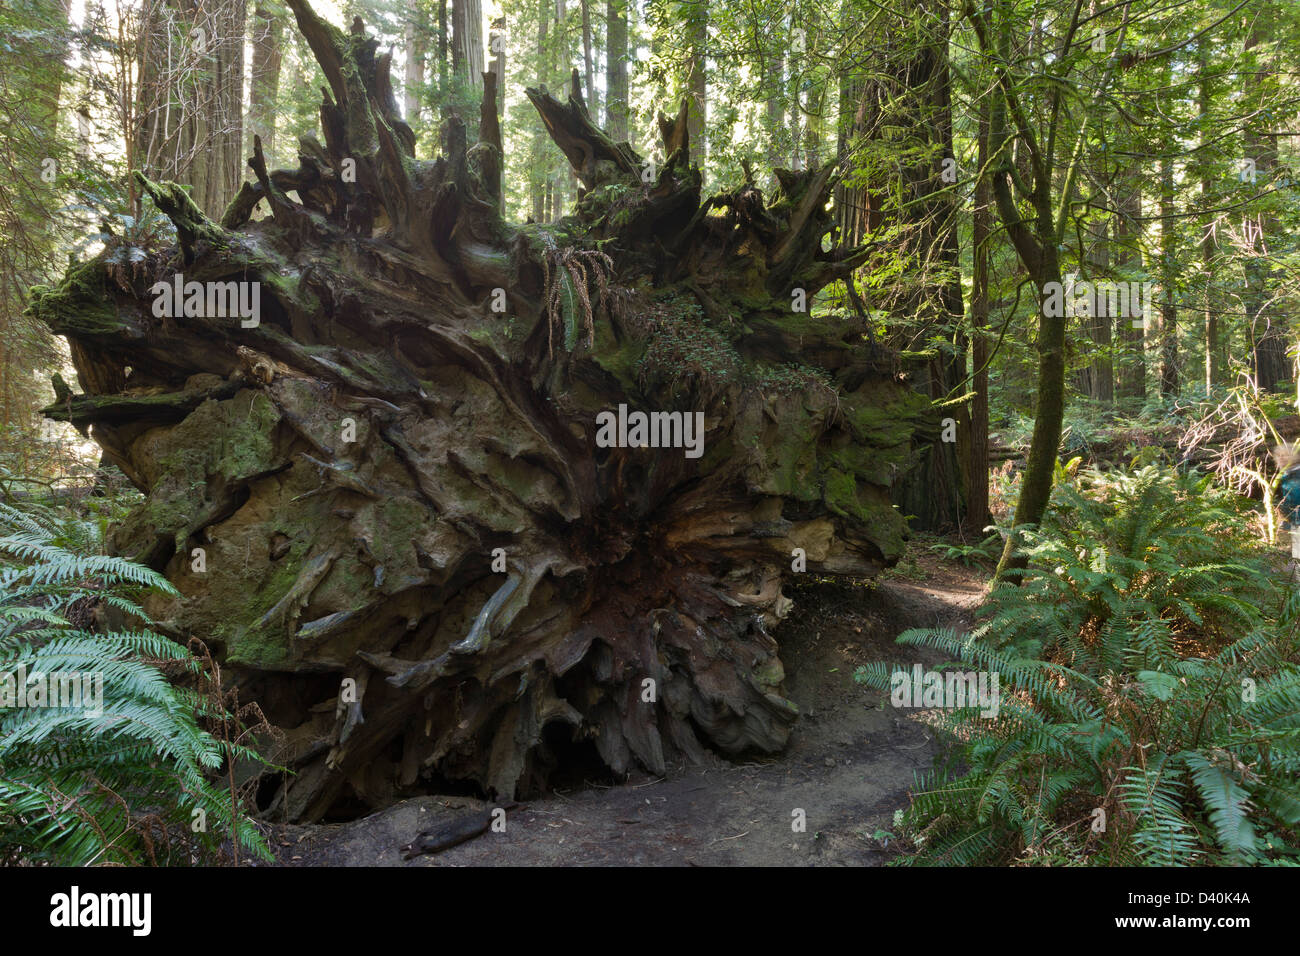 Plate-forme de racines peu profondes de la côte vieille (Sequoia sempervirens) en Fondateurs Grove, Humboldt Redwoods State Park, États-Unis Banque D'Images